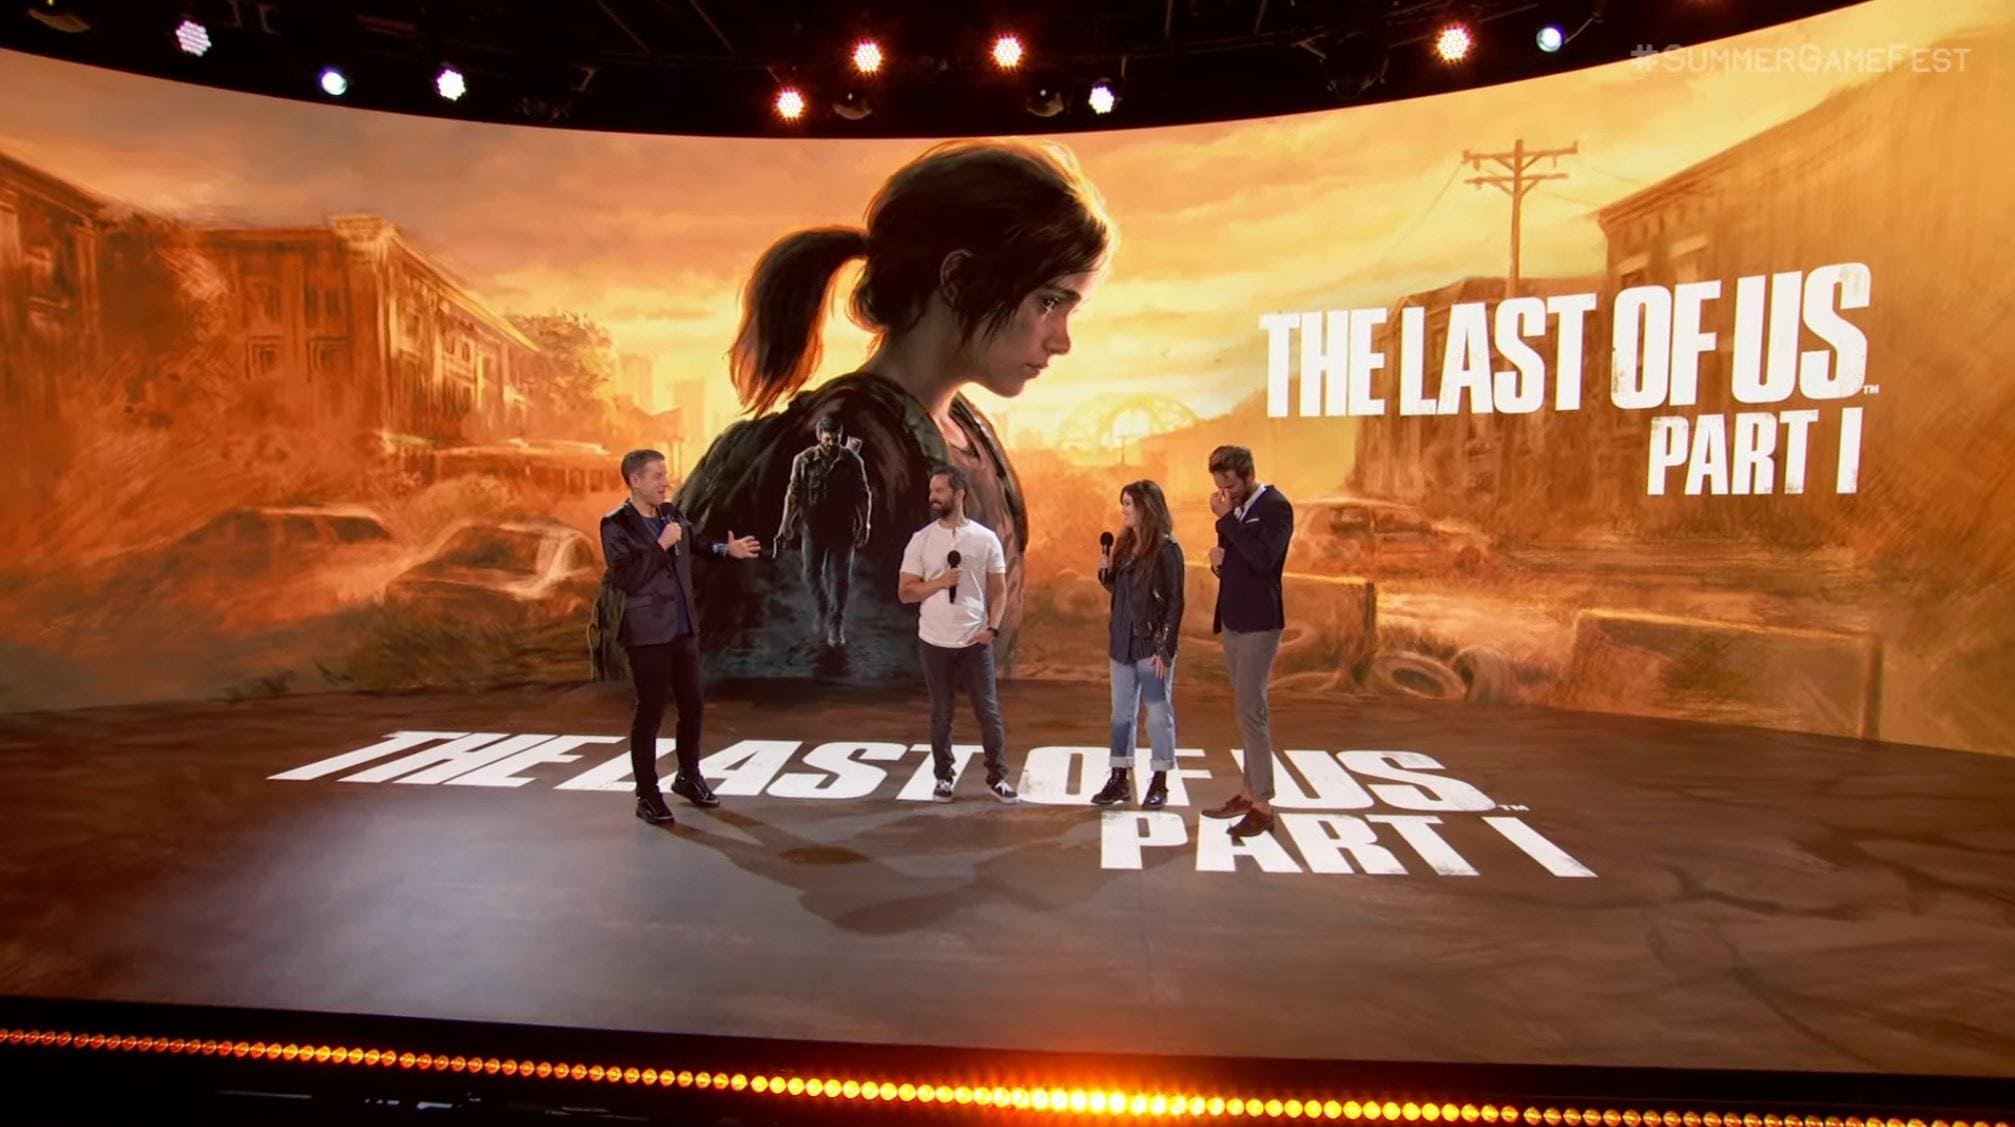 خبر شکفت انگیز انتشار ریمیک بازی لست اف اس 1 (The Last of Us Remake) با عنوان بازی The Last of Us: Part 1  